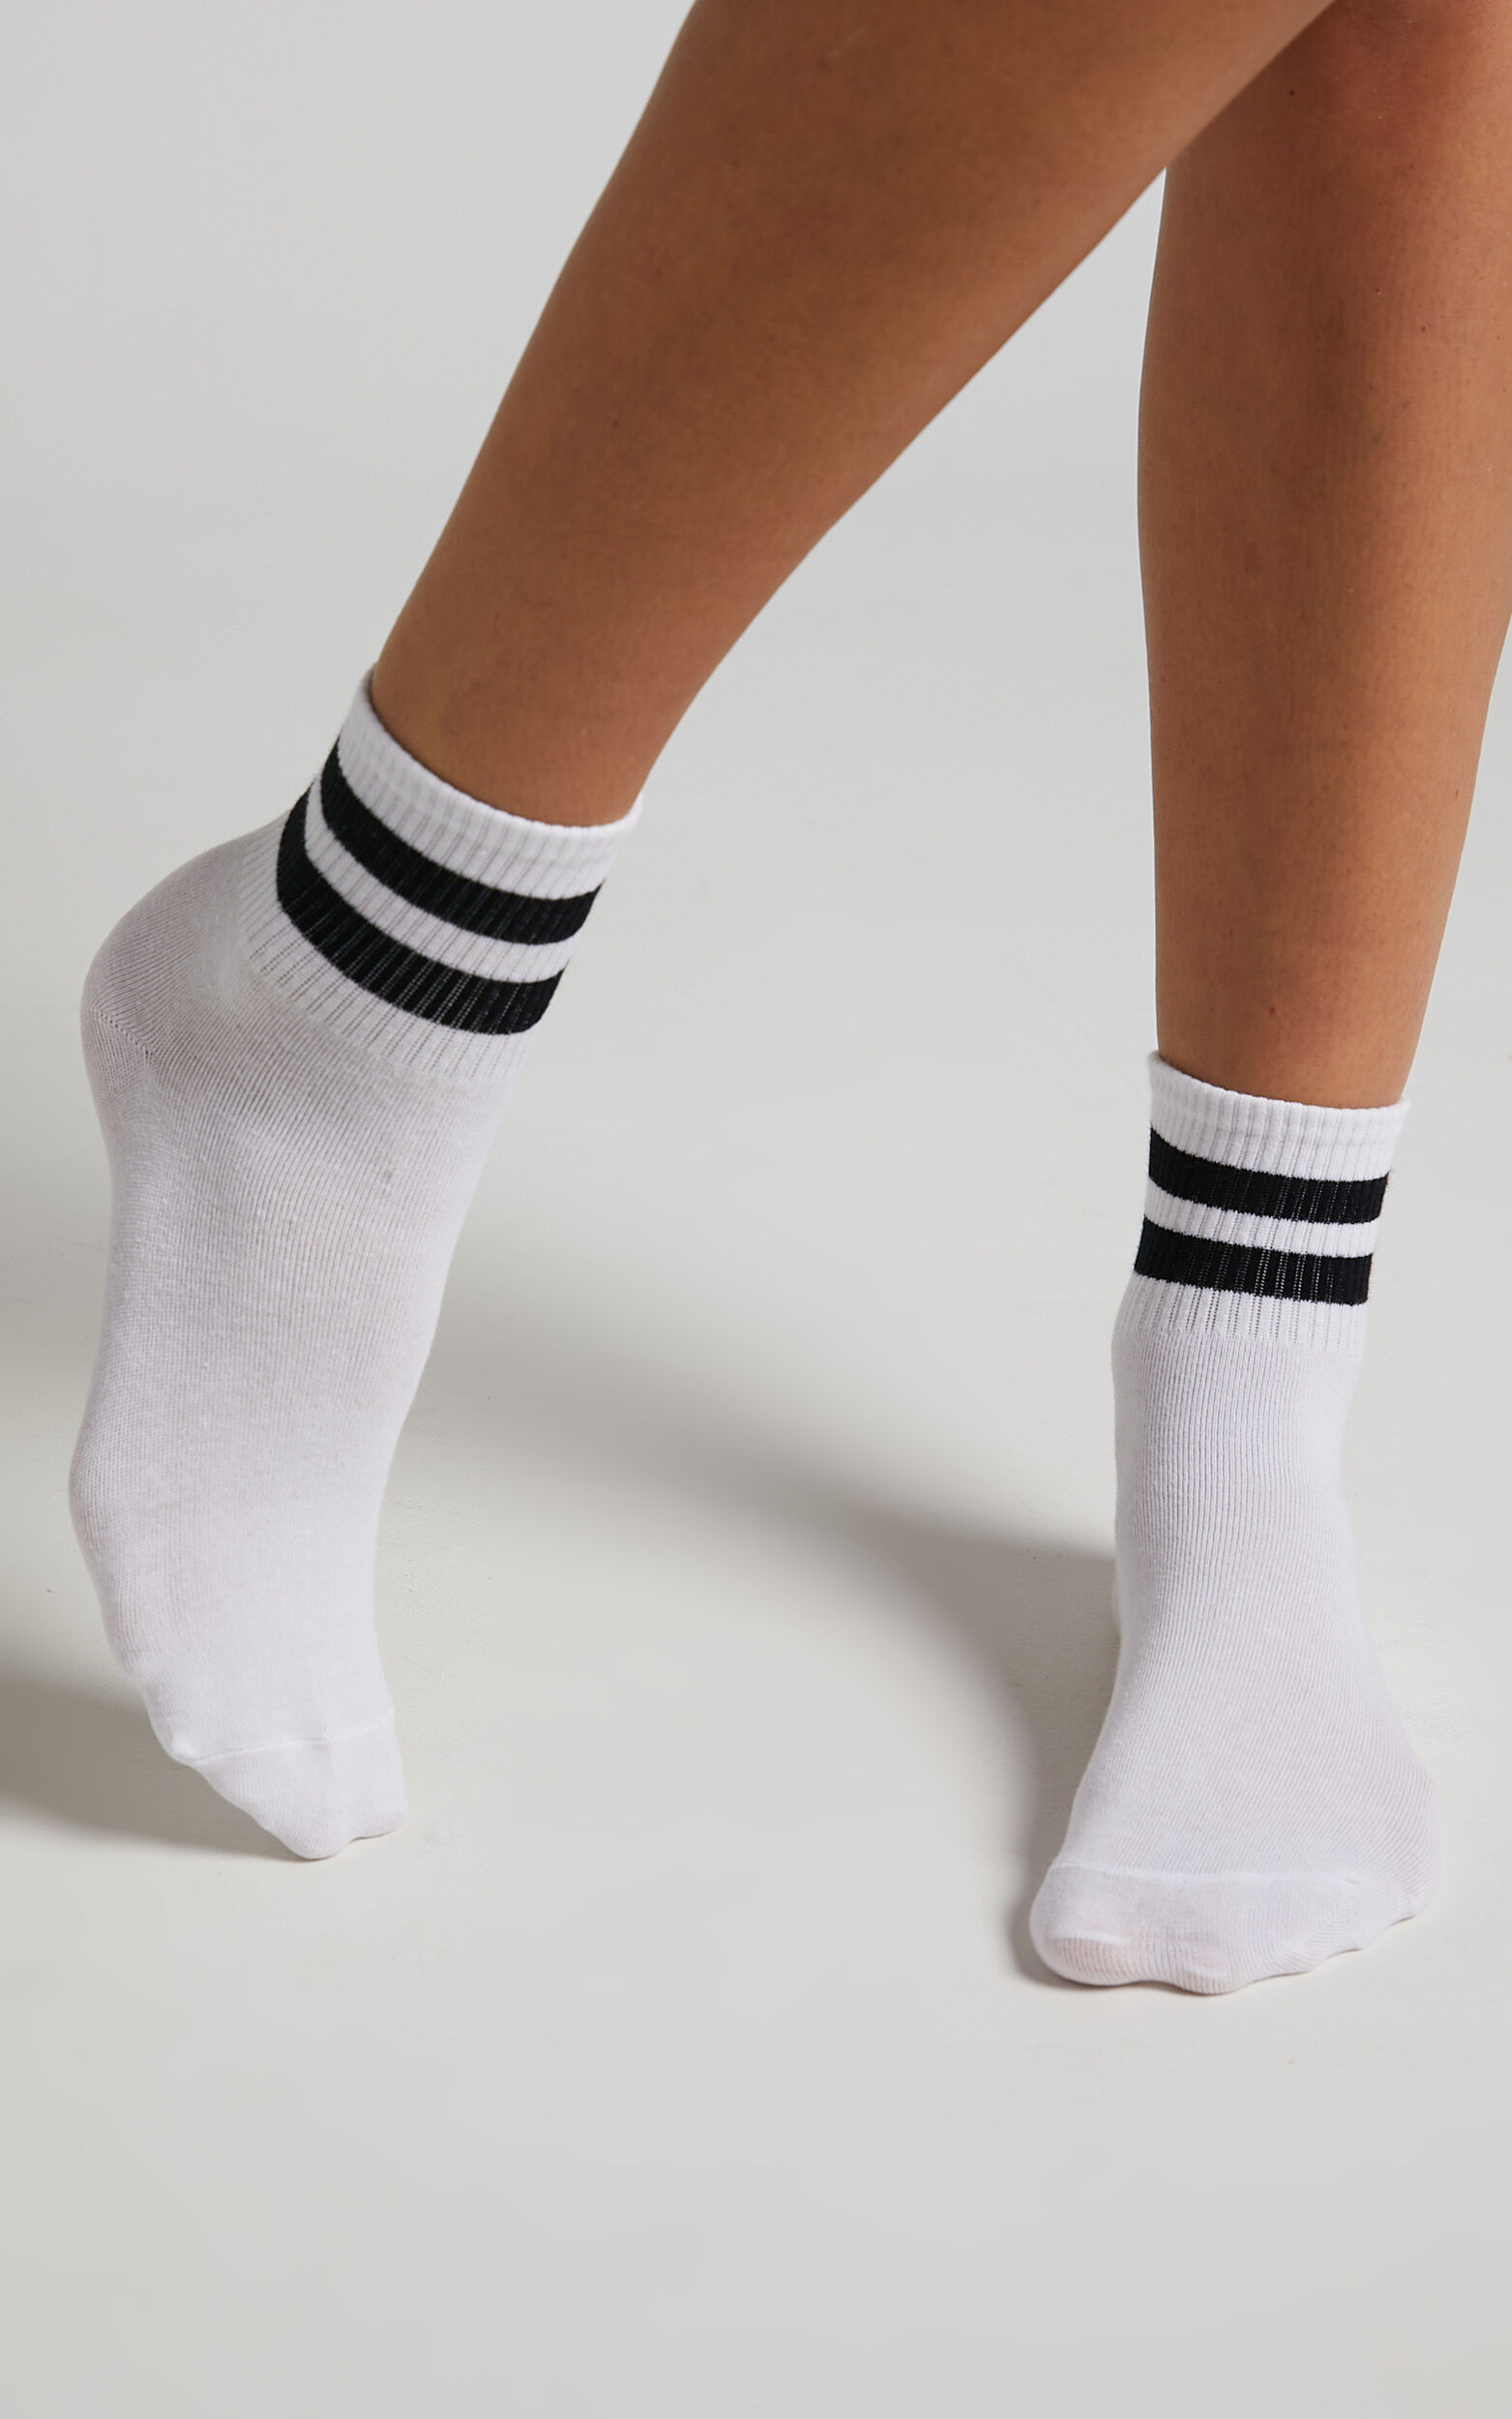 Vasilisa Stripe Crew Socks - Pack of 2 in White and Black - OneSize, PNK1